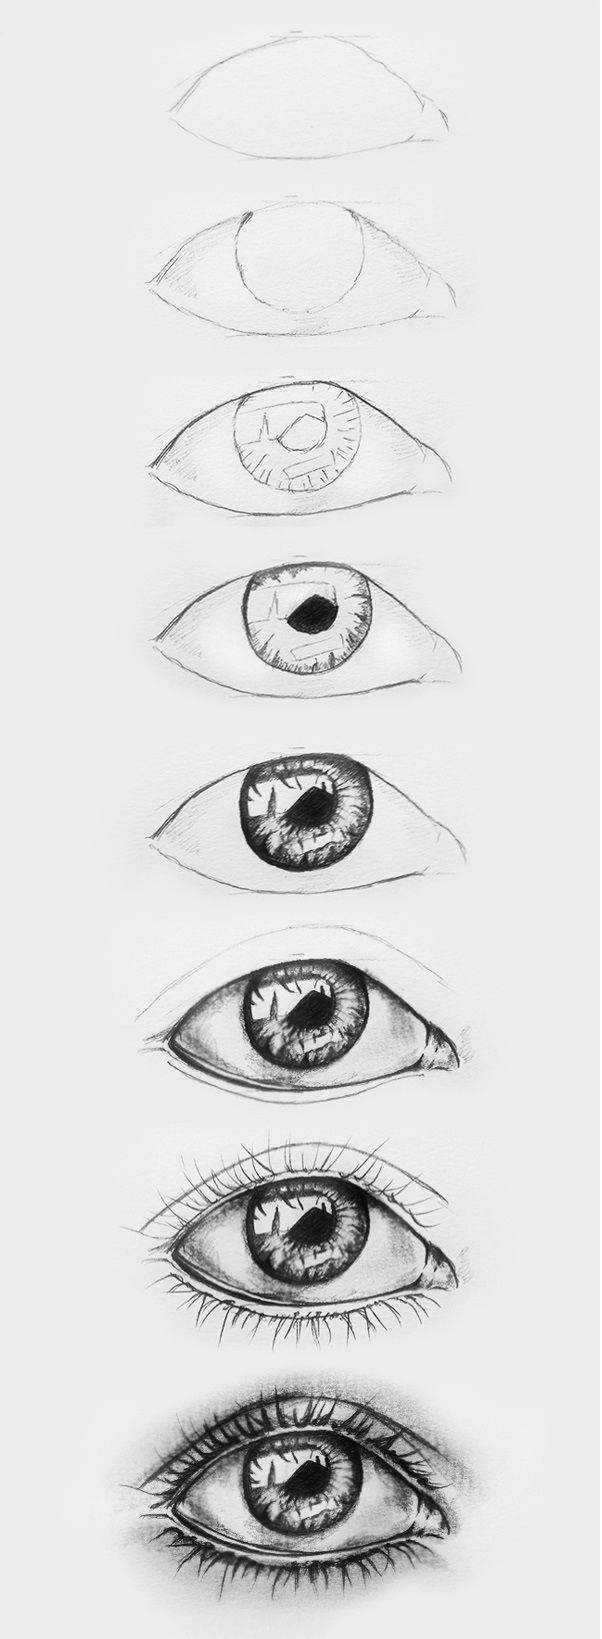 Как красиво создавать рисунки глаза карандашом поэтапно для начинающих